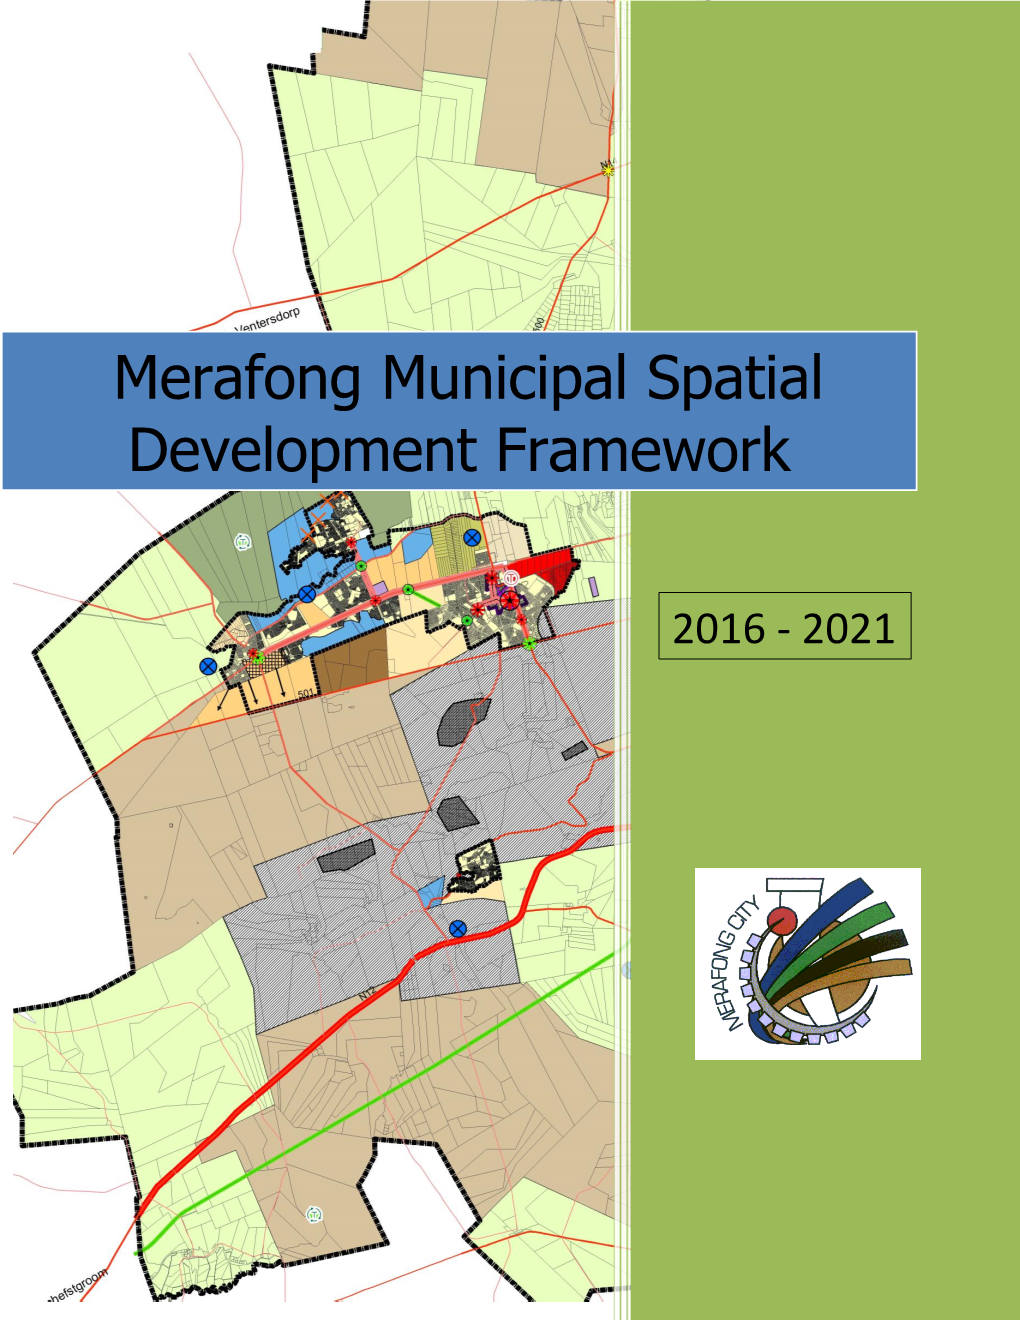 Merafong Municipal Spatial Development Framework